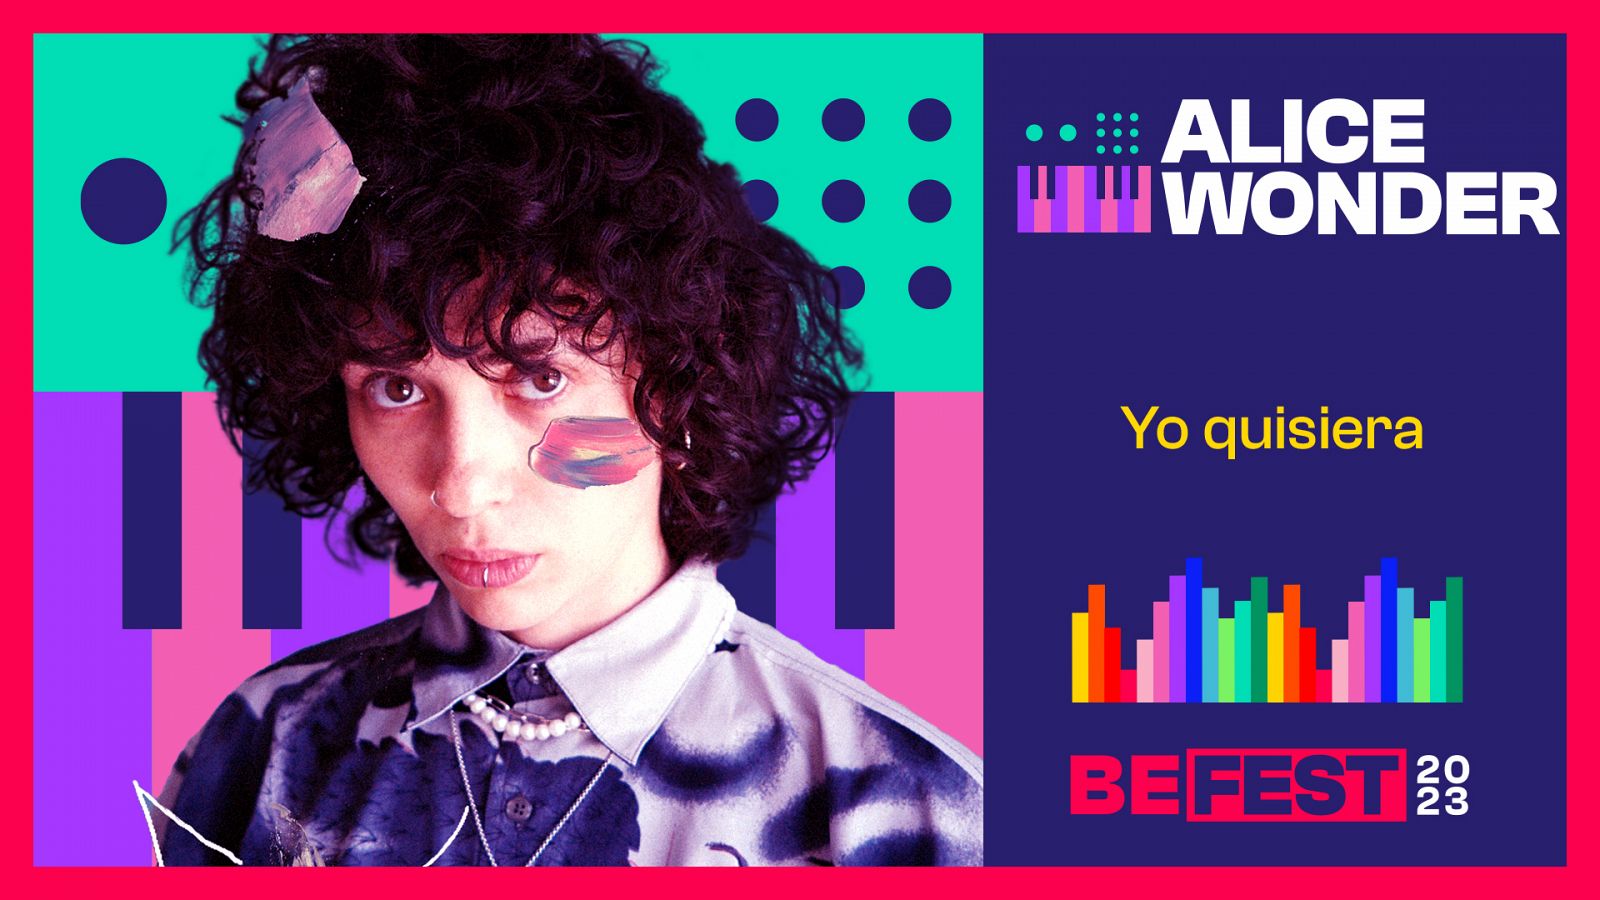 Alice Wonder: "Yo quisiera", su canción para Benidorm Fest 2023